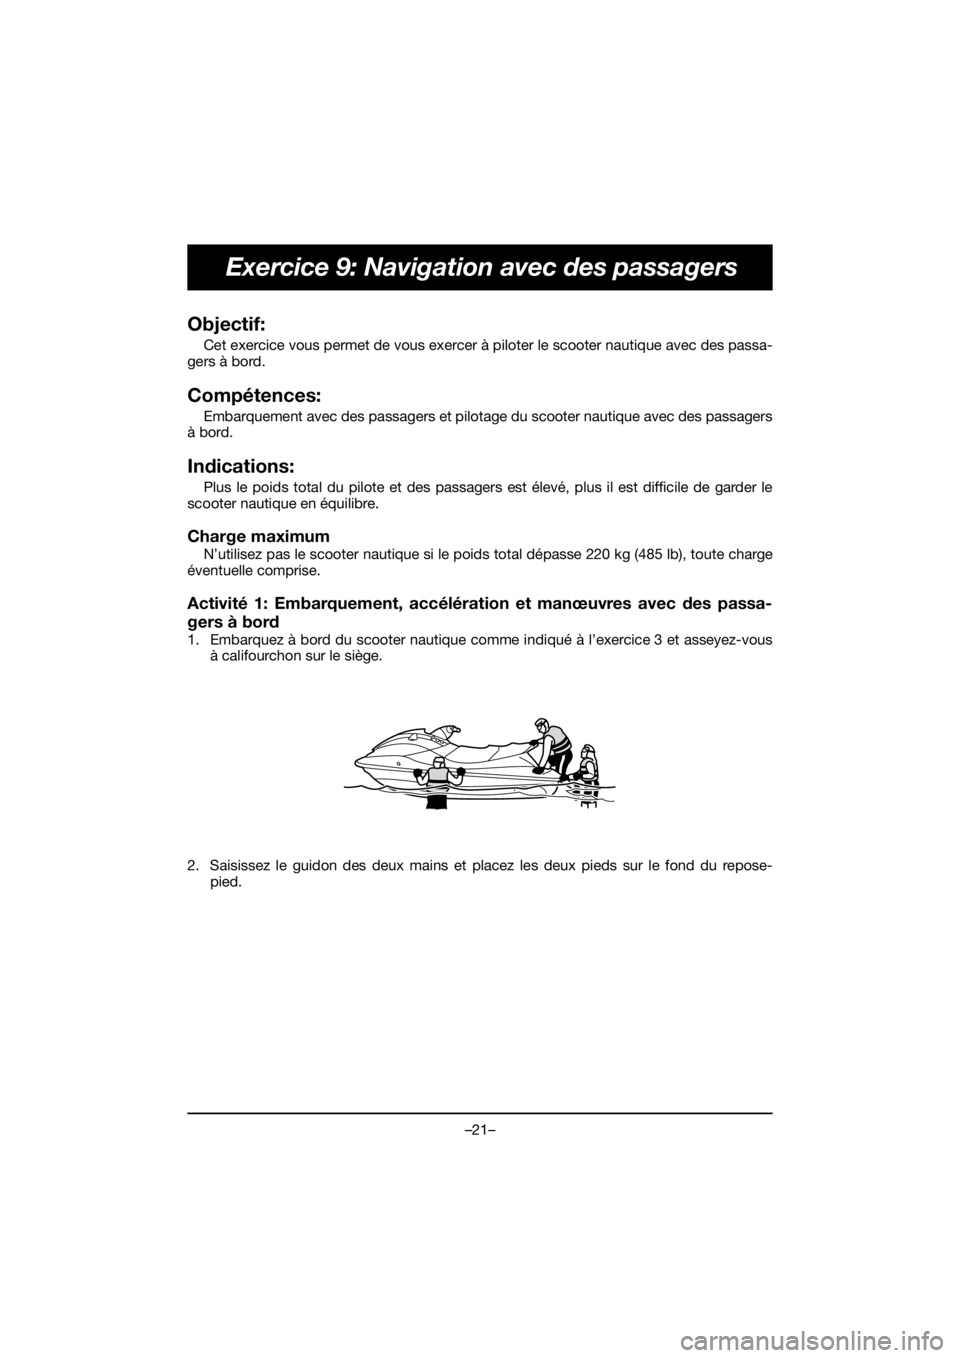 YAMAHA EX 2019  Manuale de Empleo (in Spanish) –21–
Exercice 9: Navigation avec des passagers
Objectif: 
Cet exercice vous permet de vous exercer à piloter le scooter nautique avec des passa-
gers à bord.
Compétences: 
Embarquement avec des